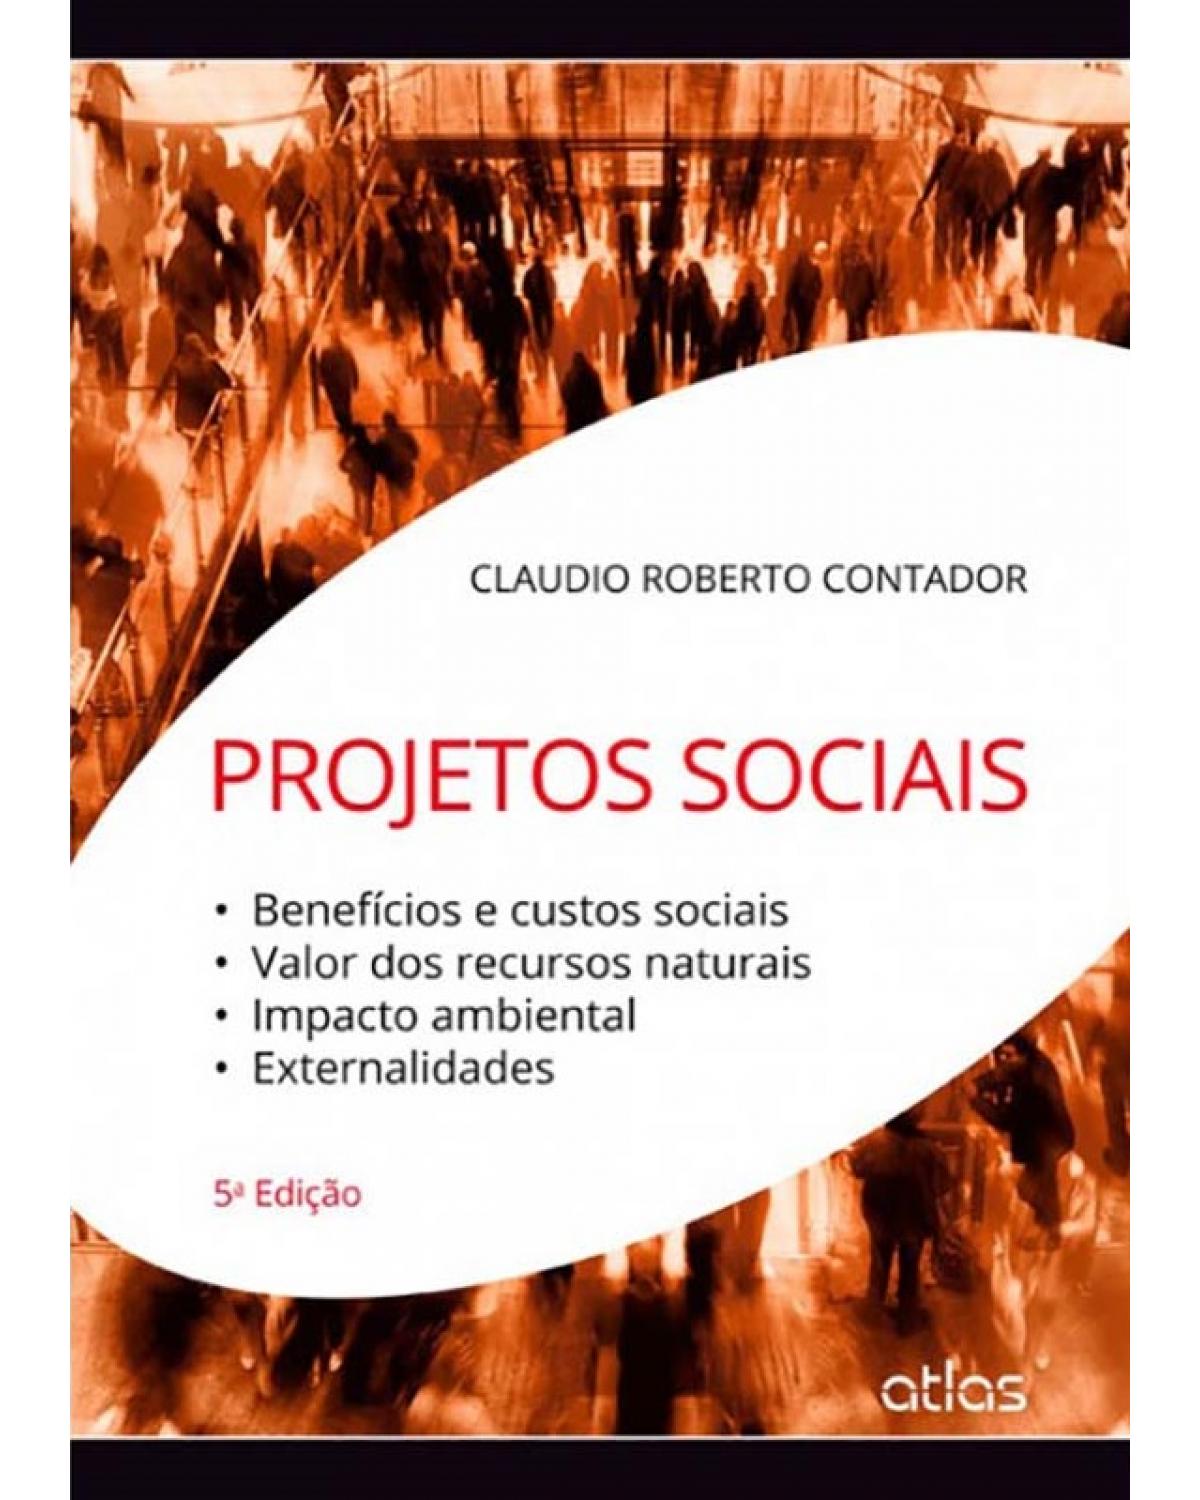 Projetos sociais - Benefícios e custos sociais, valor dos recursos naturais, impacto ambiental, externalidades - 5ª Edição | 2014